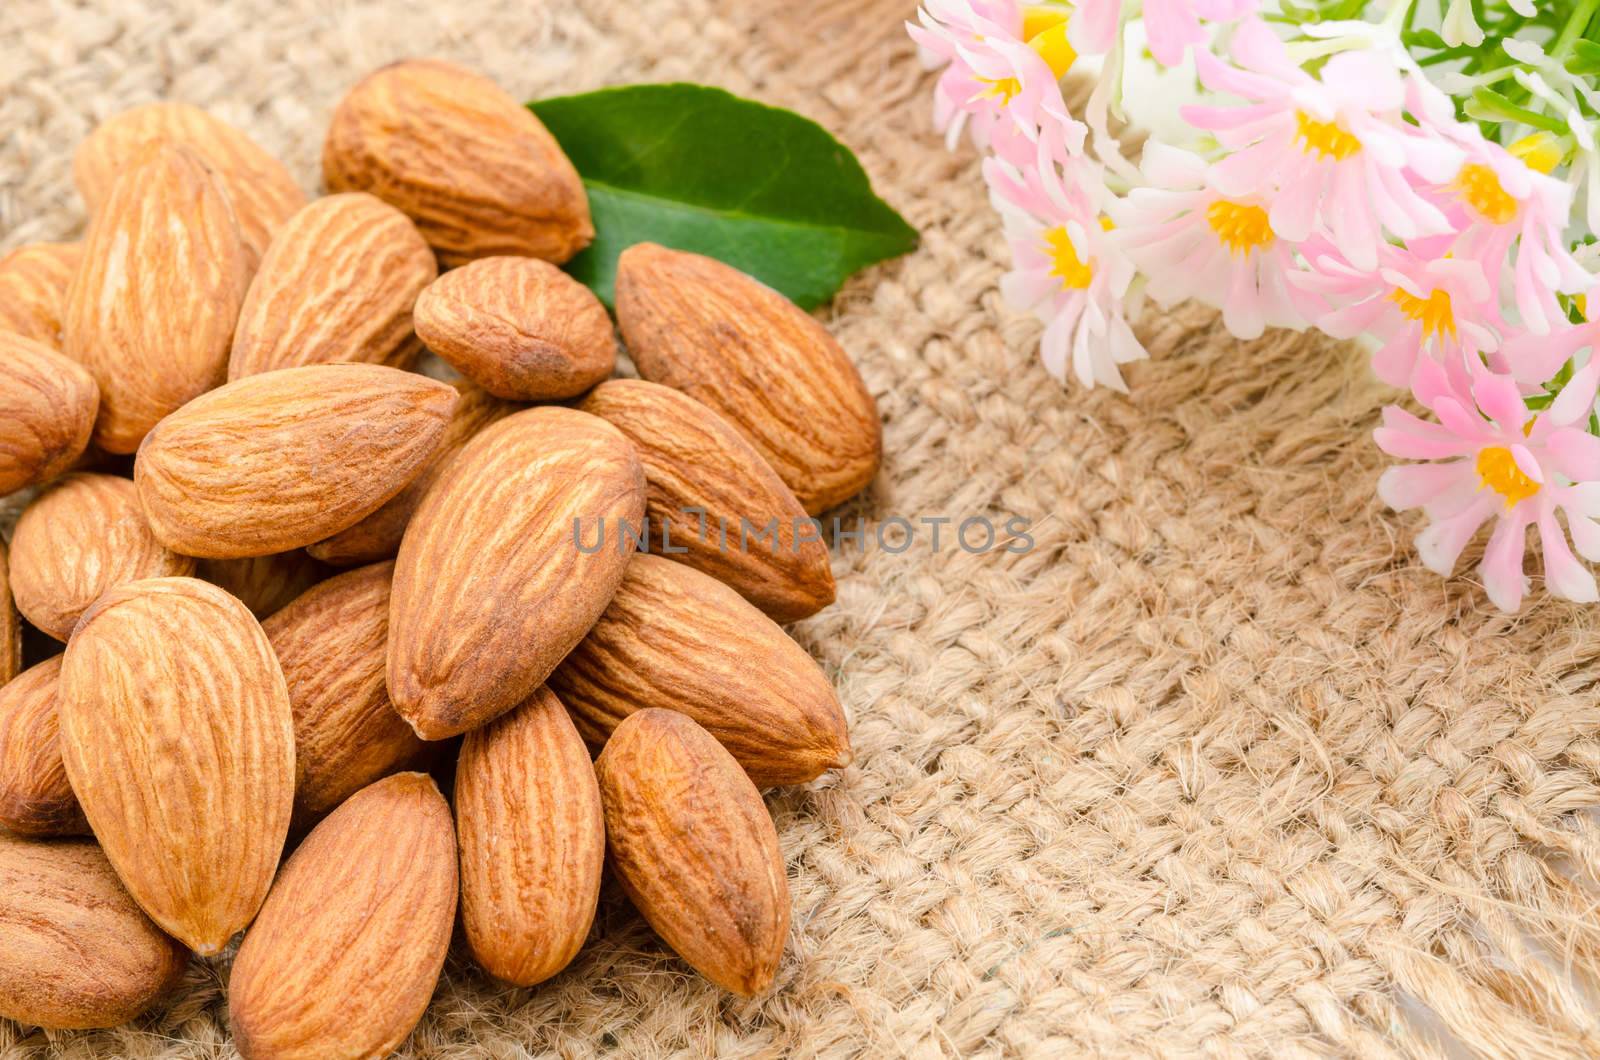 Almonds by Gamjai